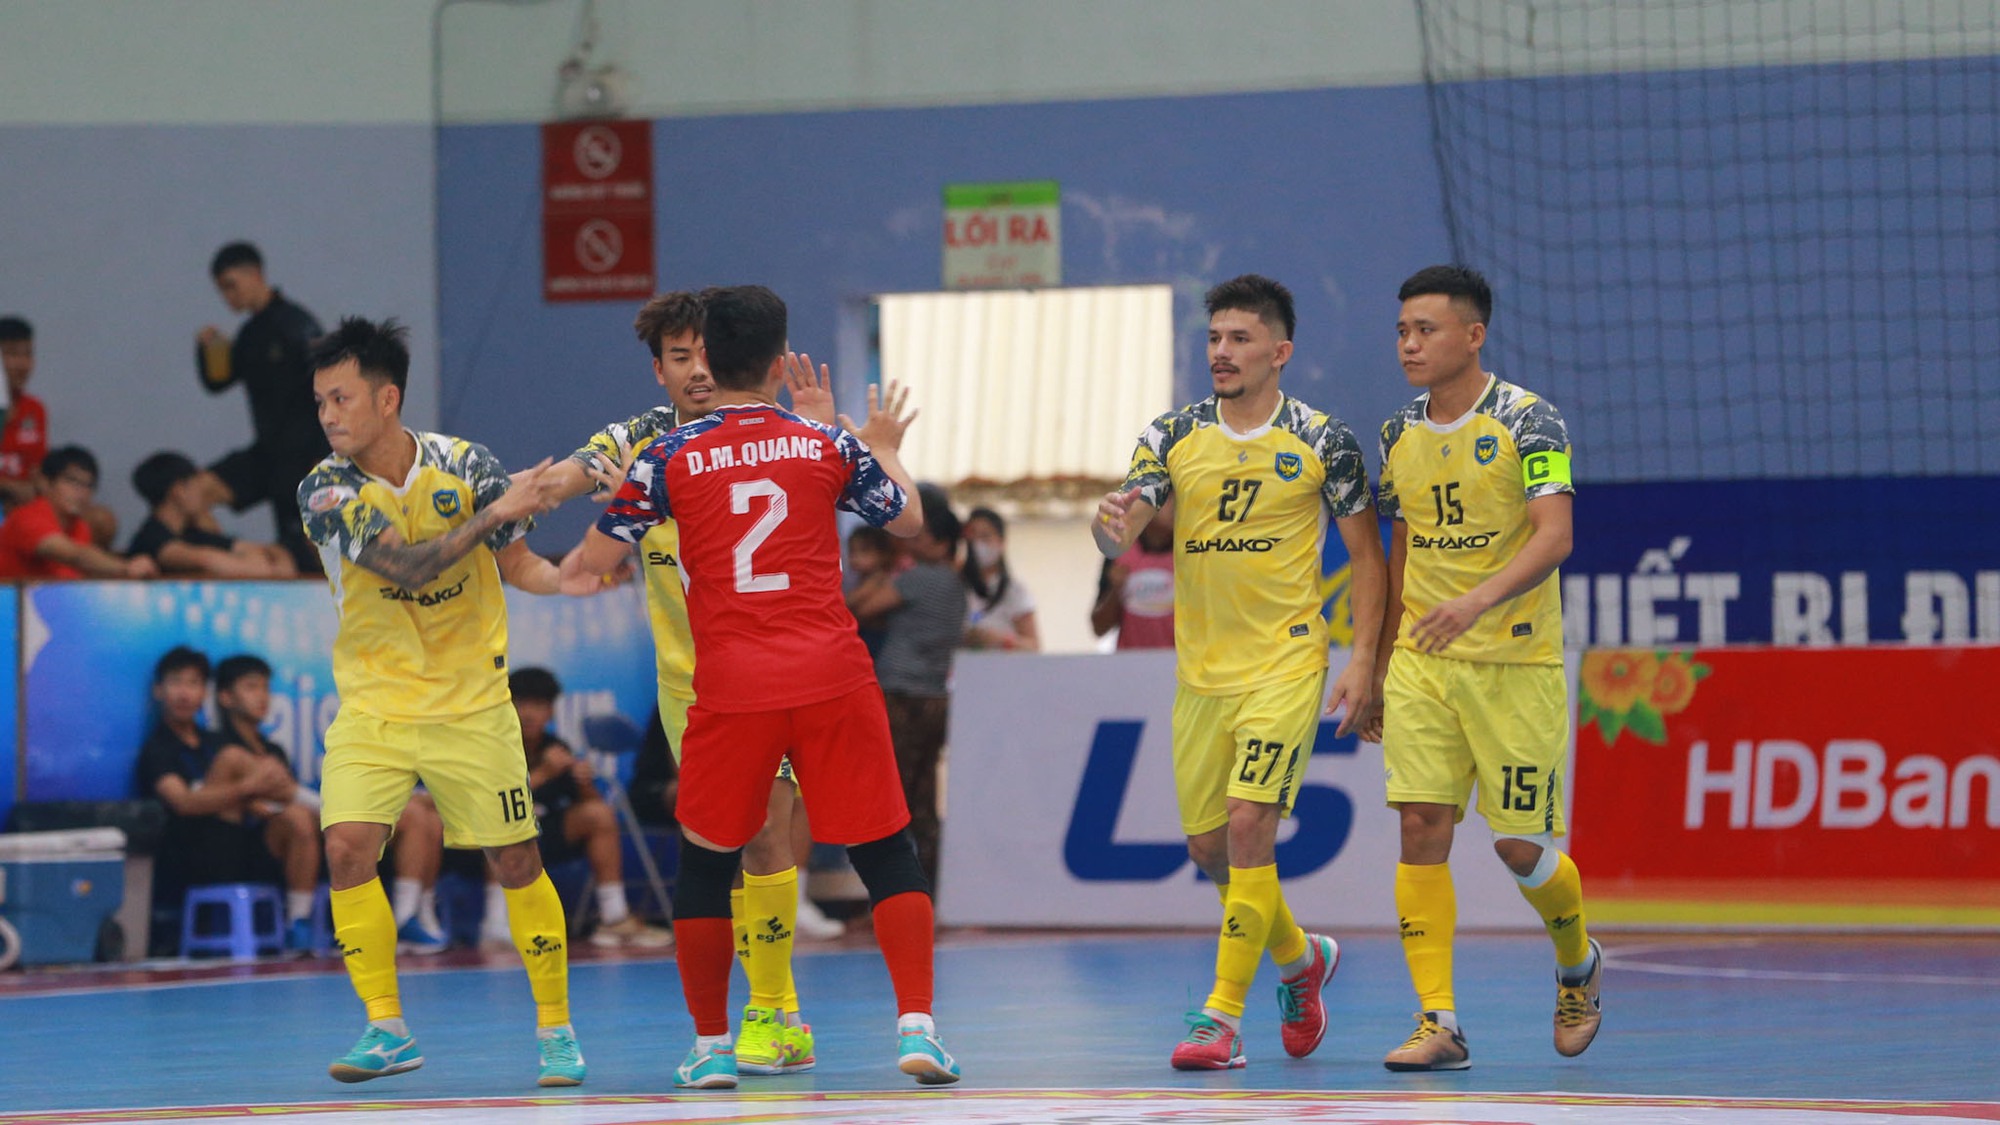 CLB Sahako trở lại cuộc đua vô địch với CLB Thái Sơn Nam